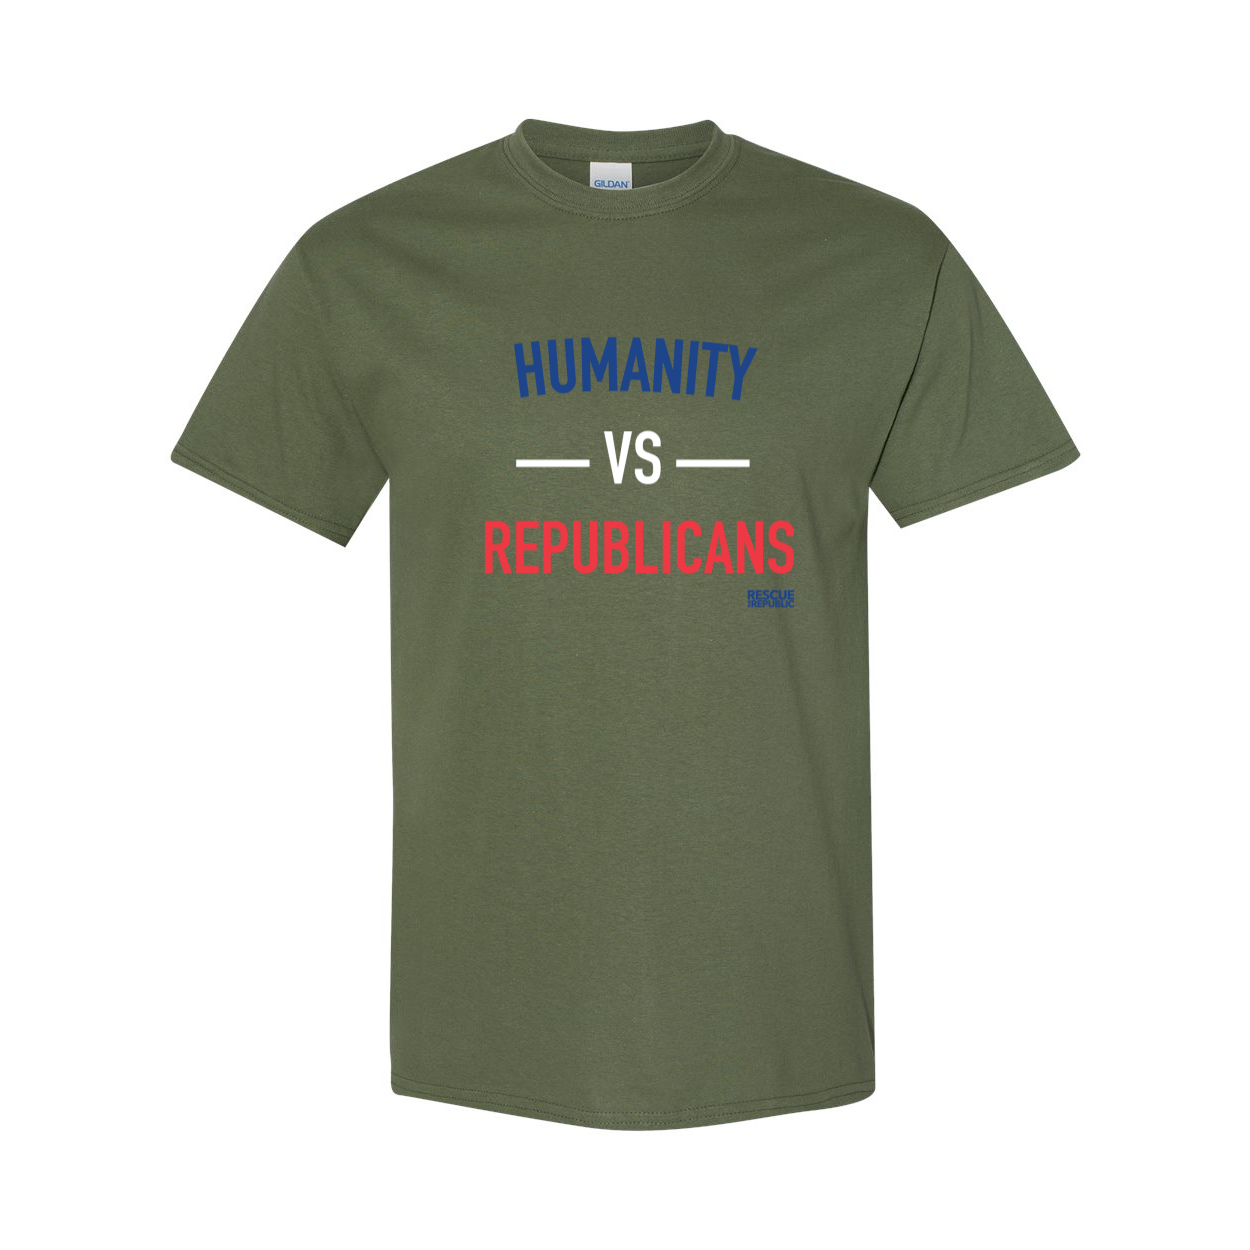 Humanity vs Republicans T-Shirt